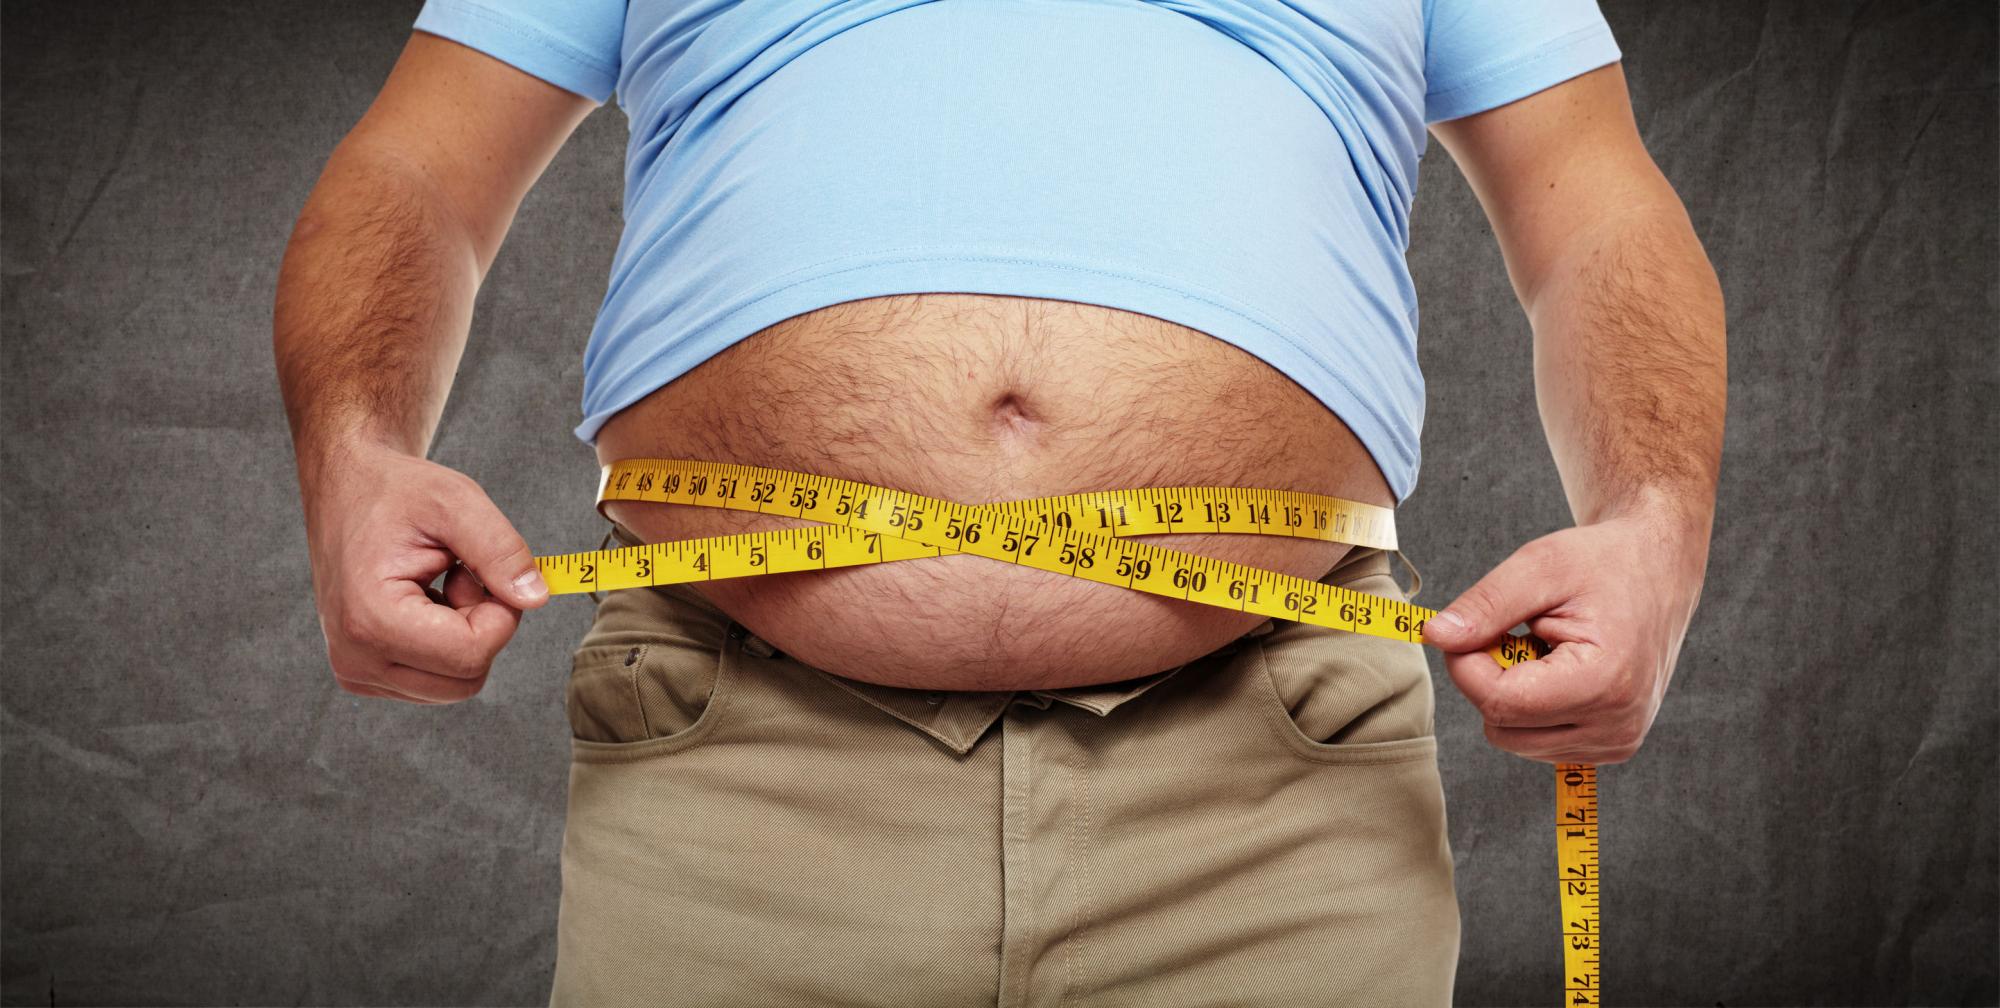 Especialistas afirmam que alimentação saudável é fundamental para controle do peso; atenção deve ser tomada já nos primeiros meses de vida